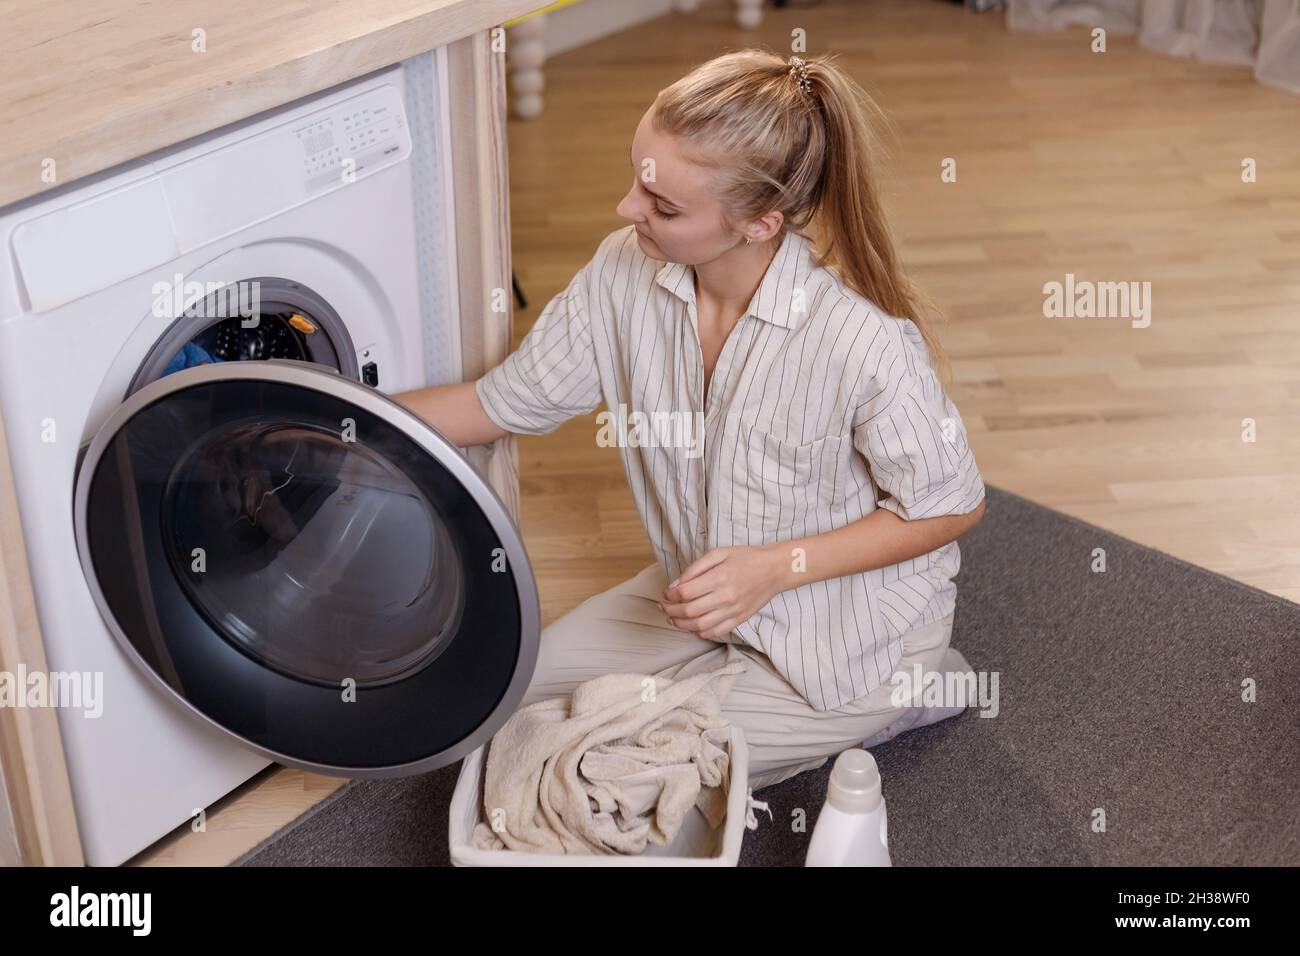 Secador de bolas y detergente de ropa en la cesta de mimbre cerca de la  lavadora, primer plano Fotografía de stock - Alamy